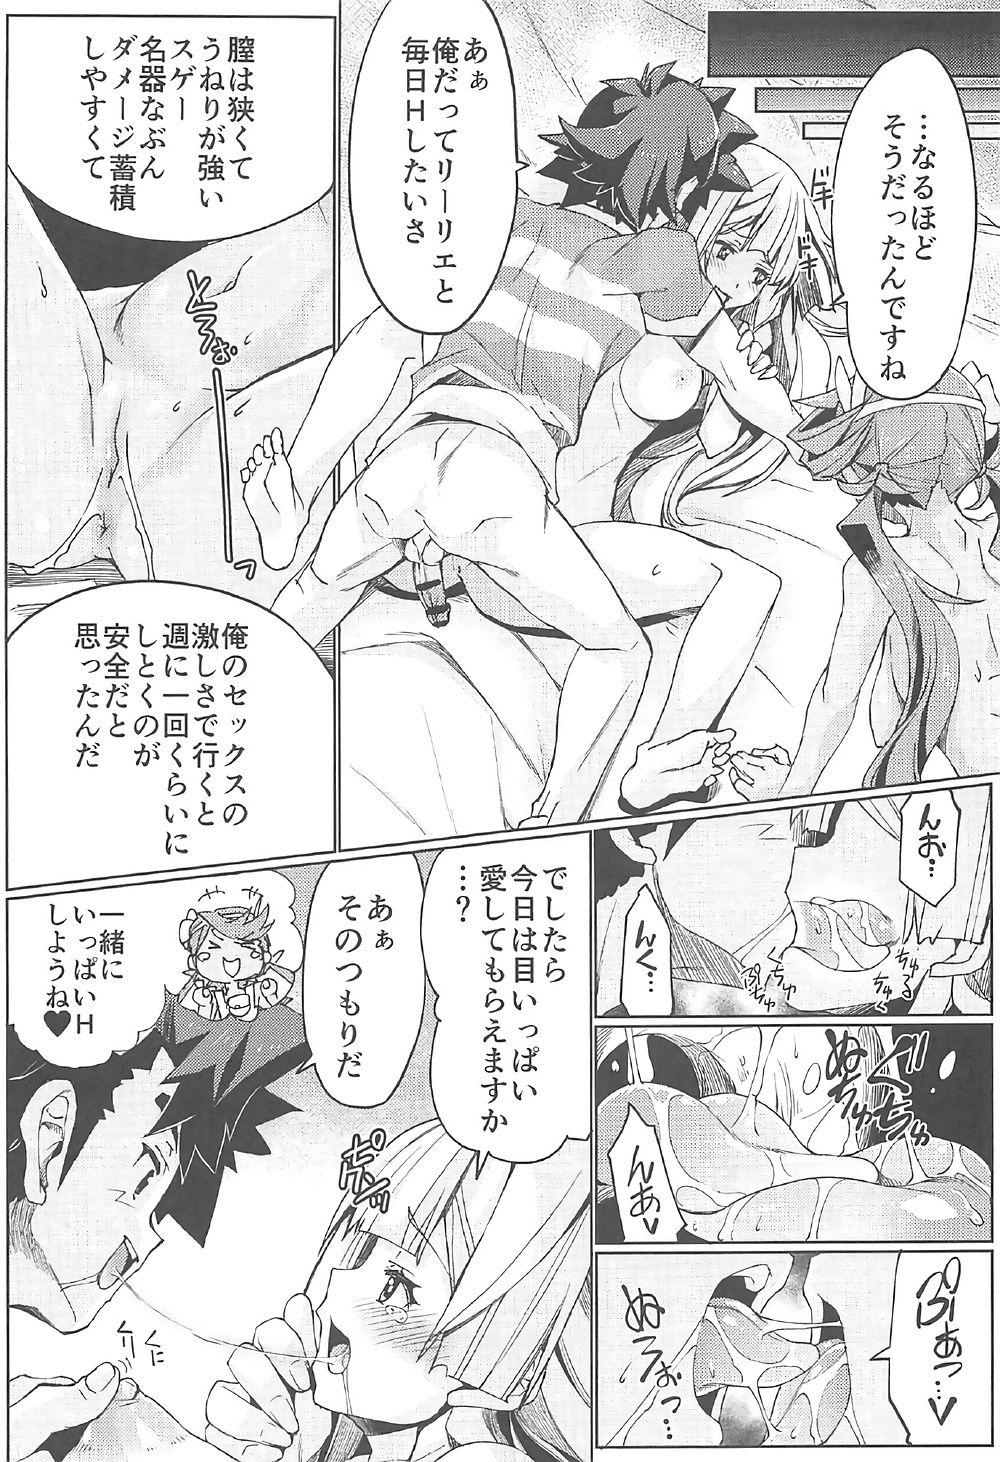 Newbie Watashi ga sono Ki ni nareba Ronriteki ni! 2!! - Pokemon Bed - Page 10